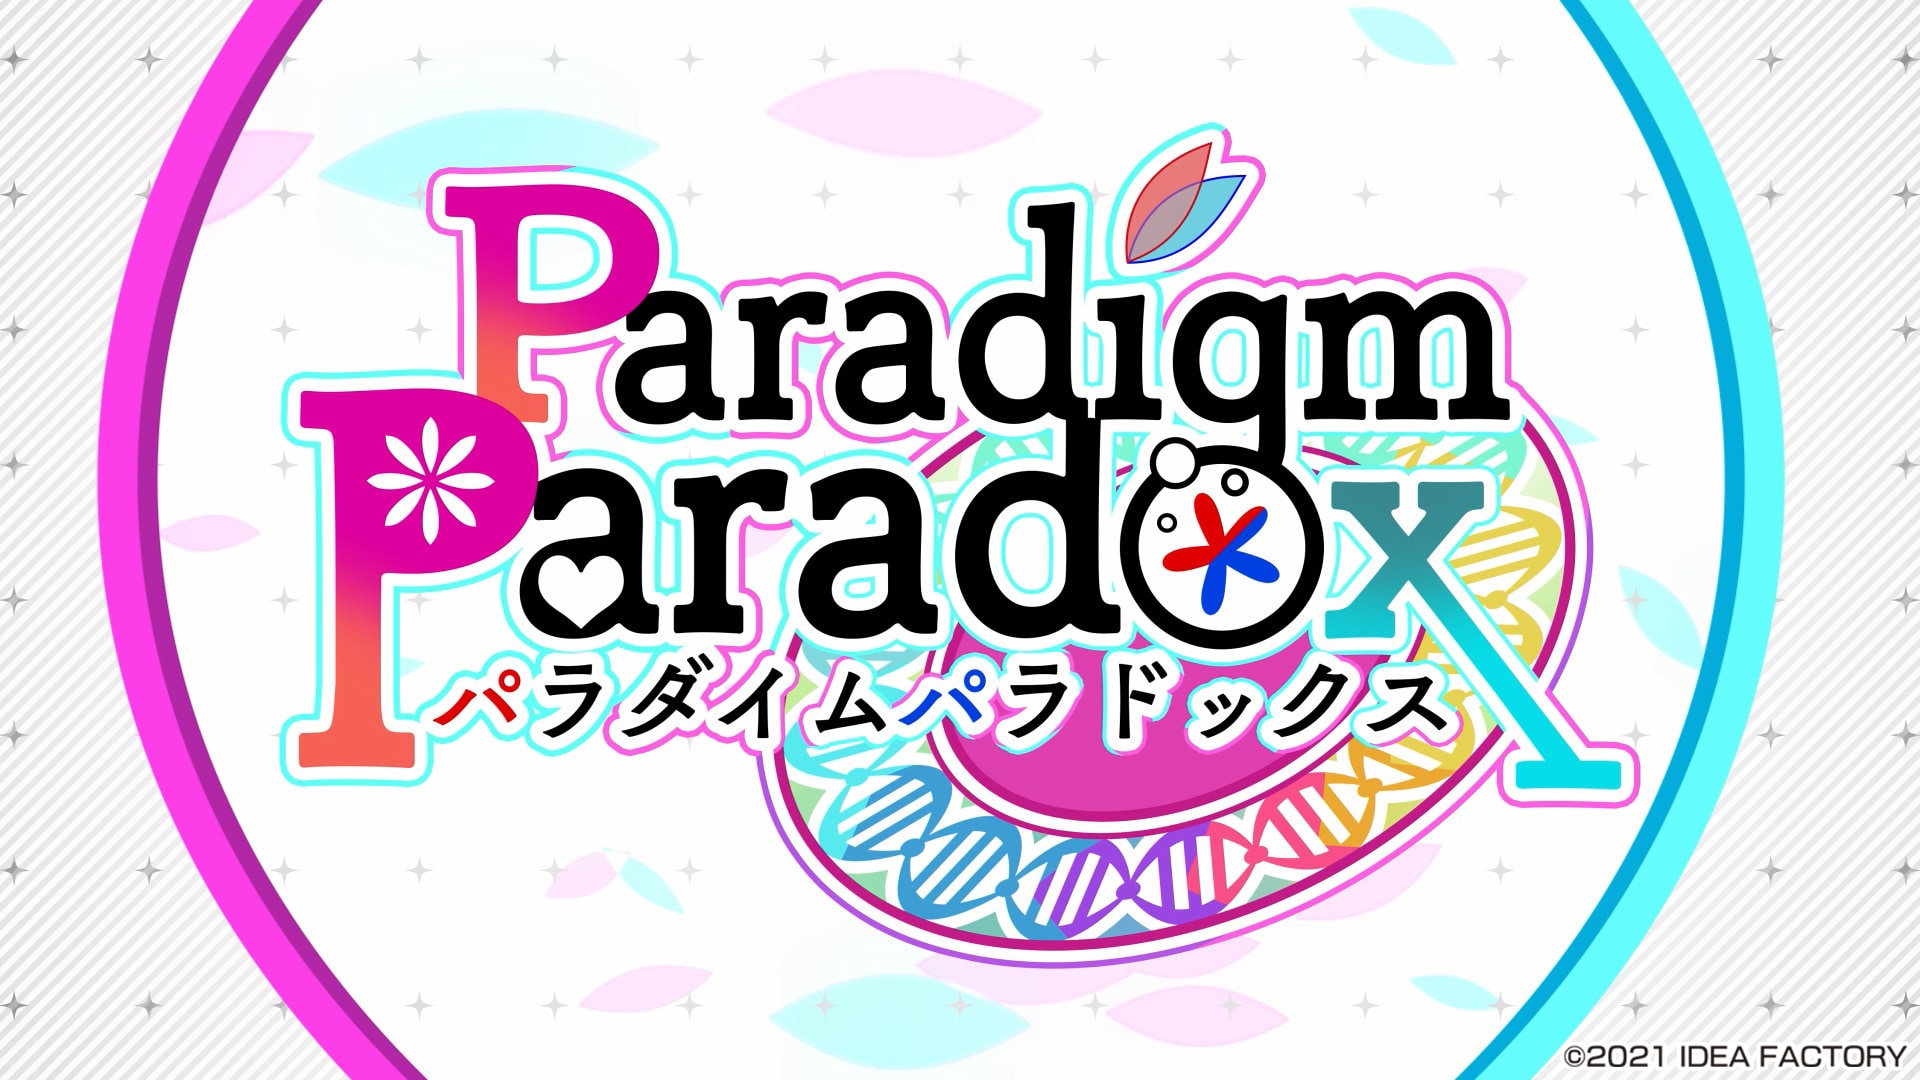 「Paradigm Paradox」